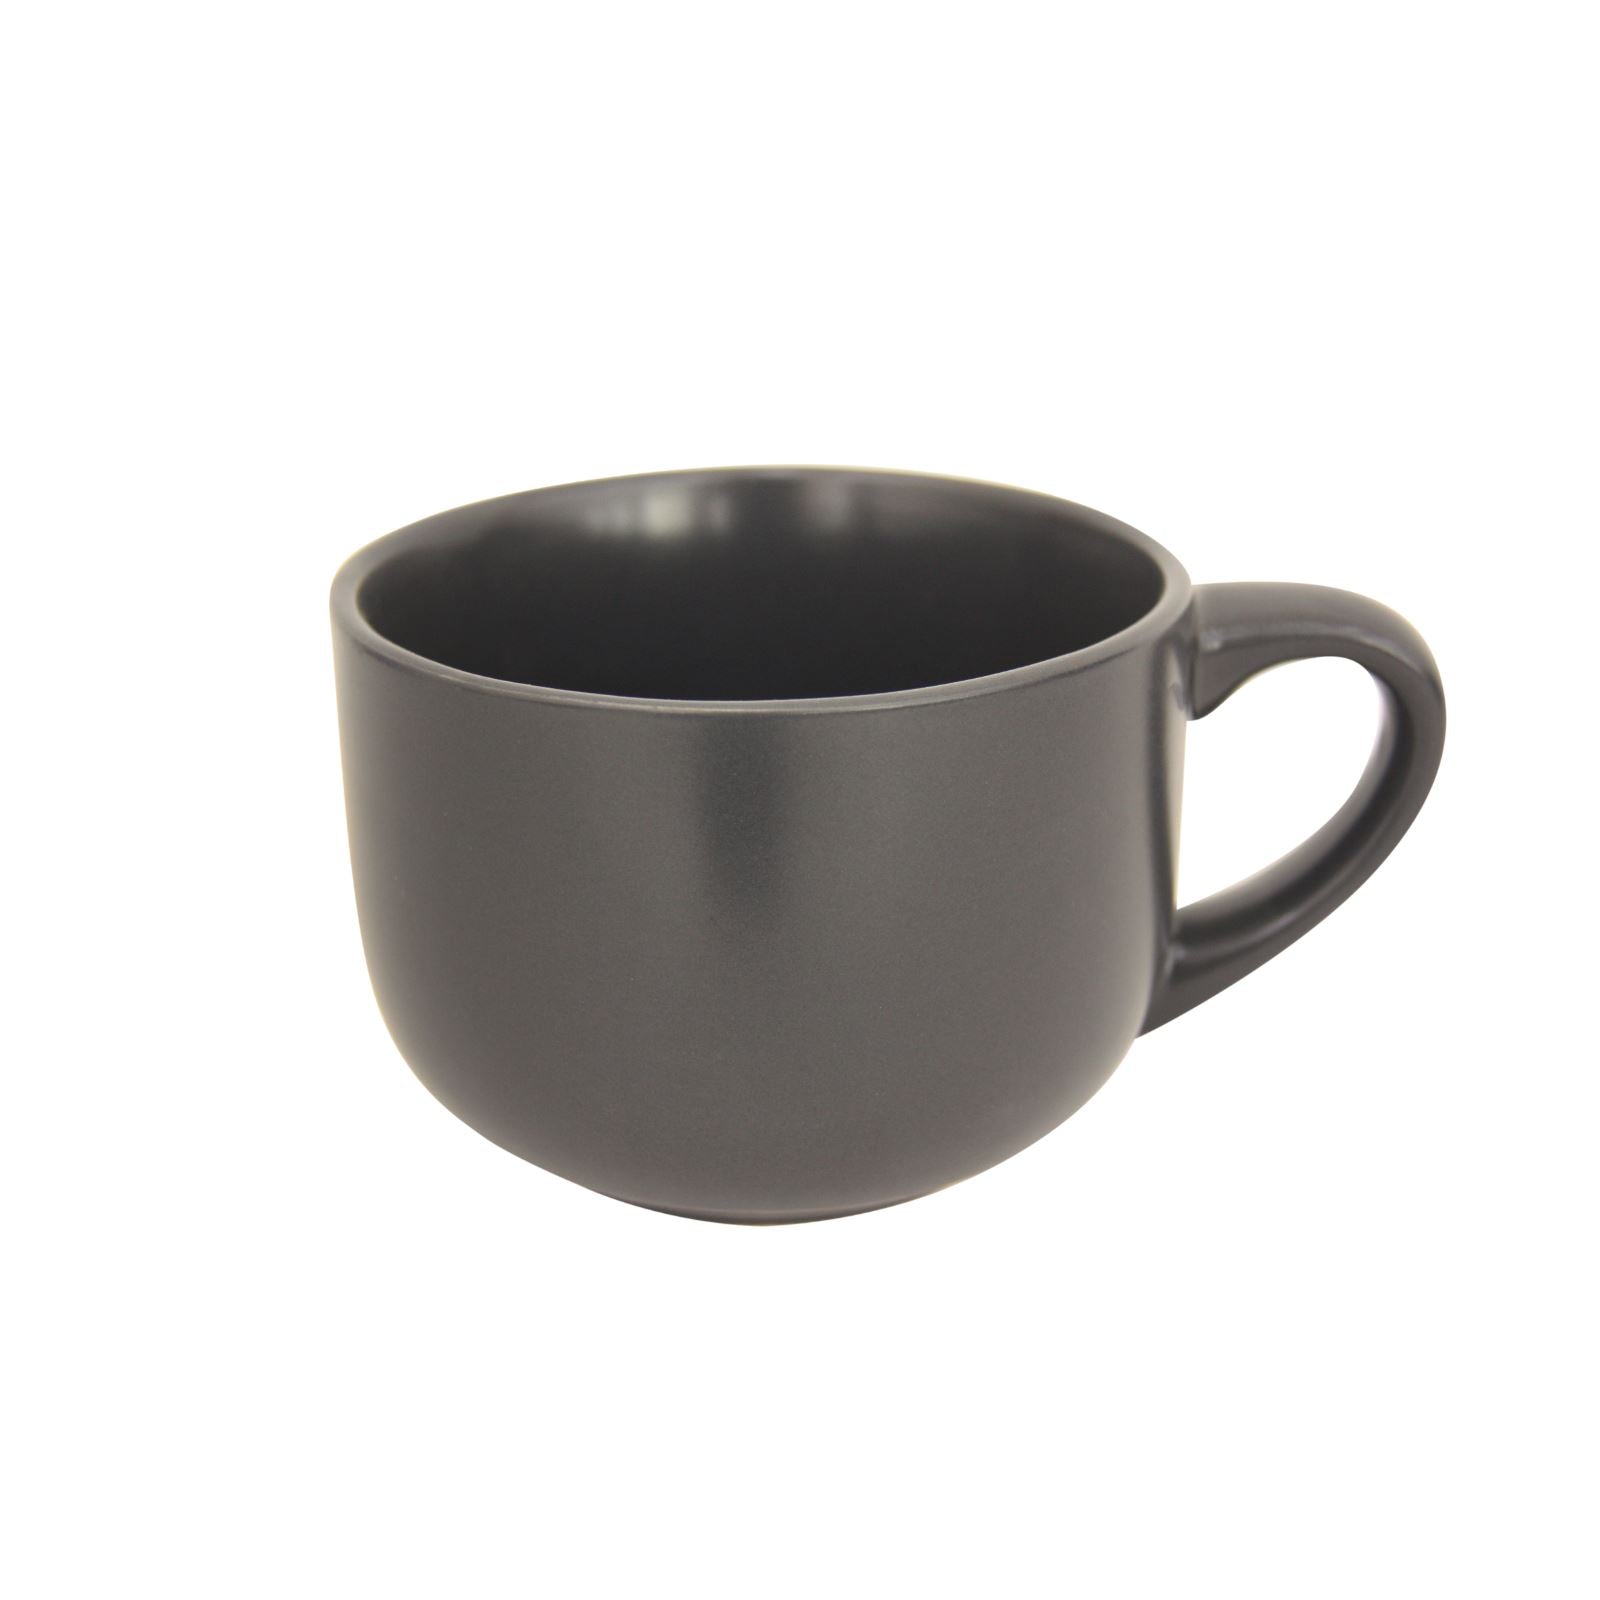 grey large soup mug on white background.